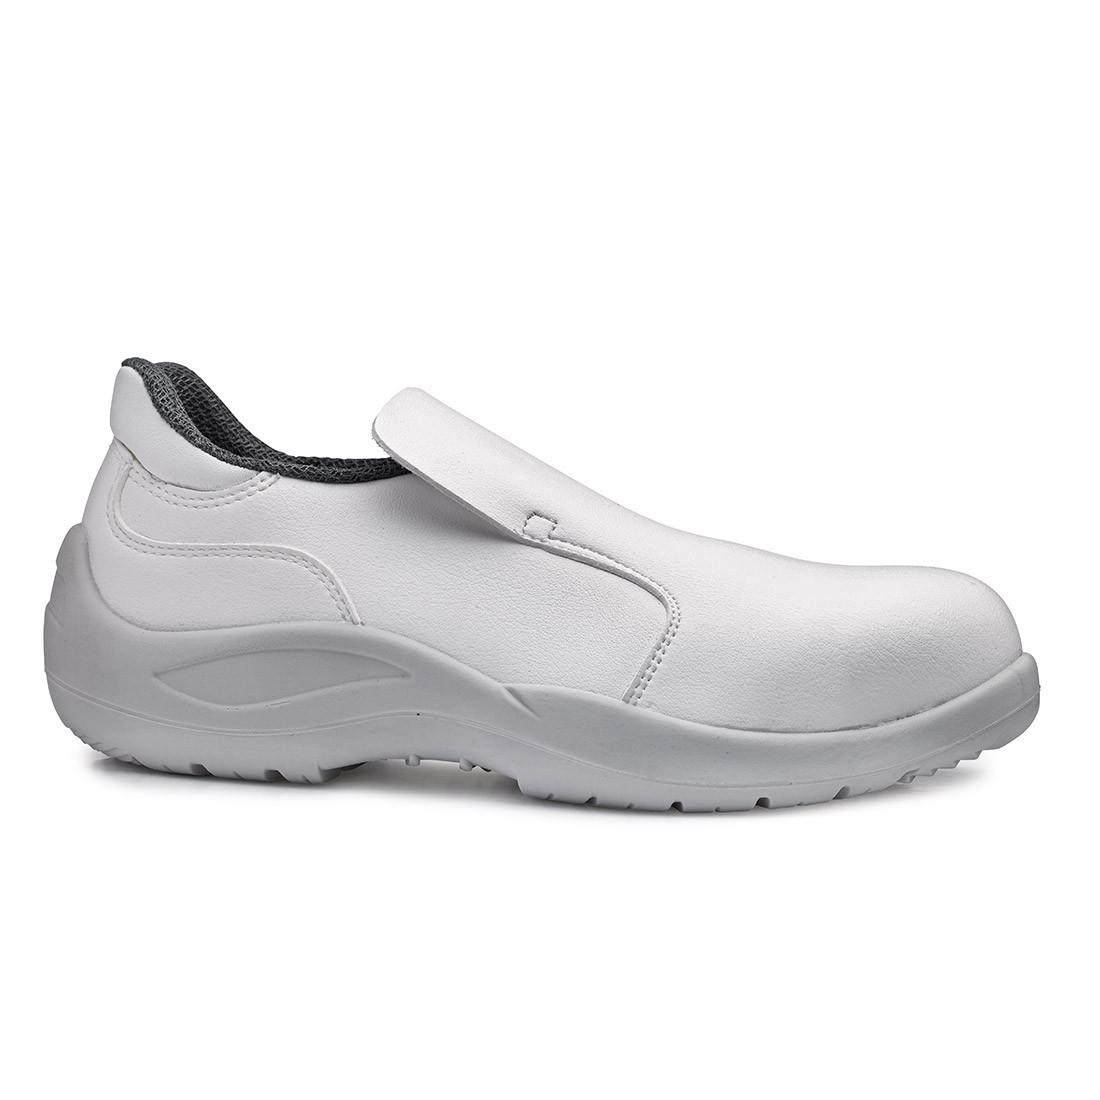 Pantofi Cadmio S1 SRC - Incaltaminte de protectie | Bocanci, Pantofi, Sandale, Cizme